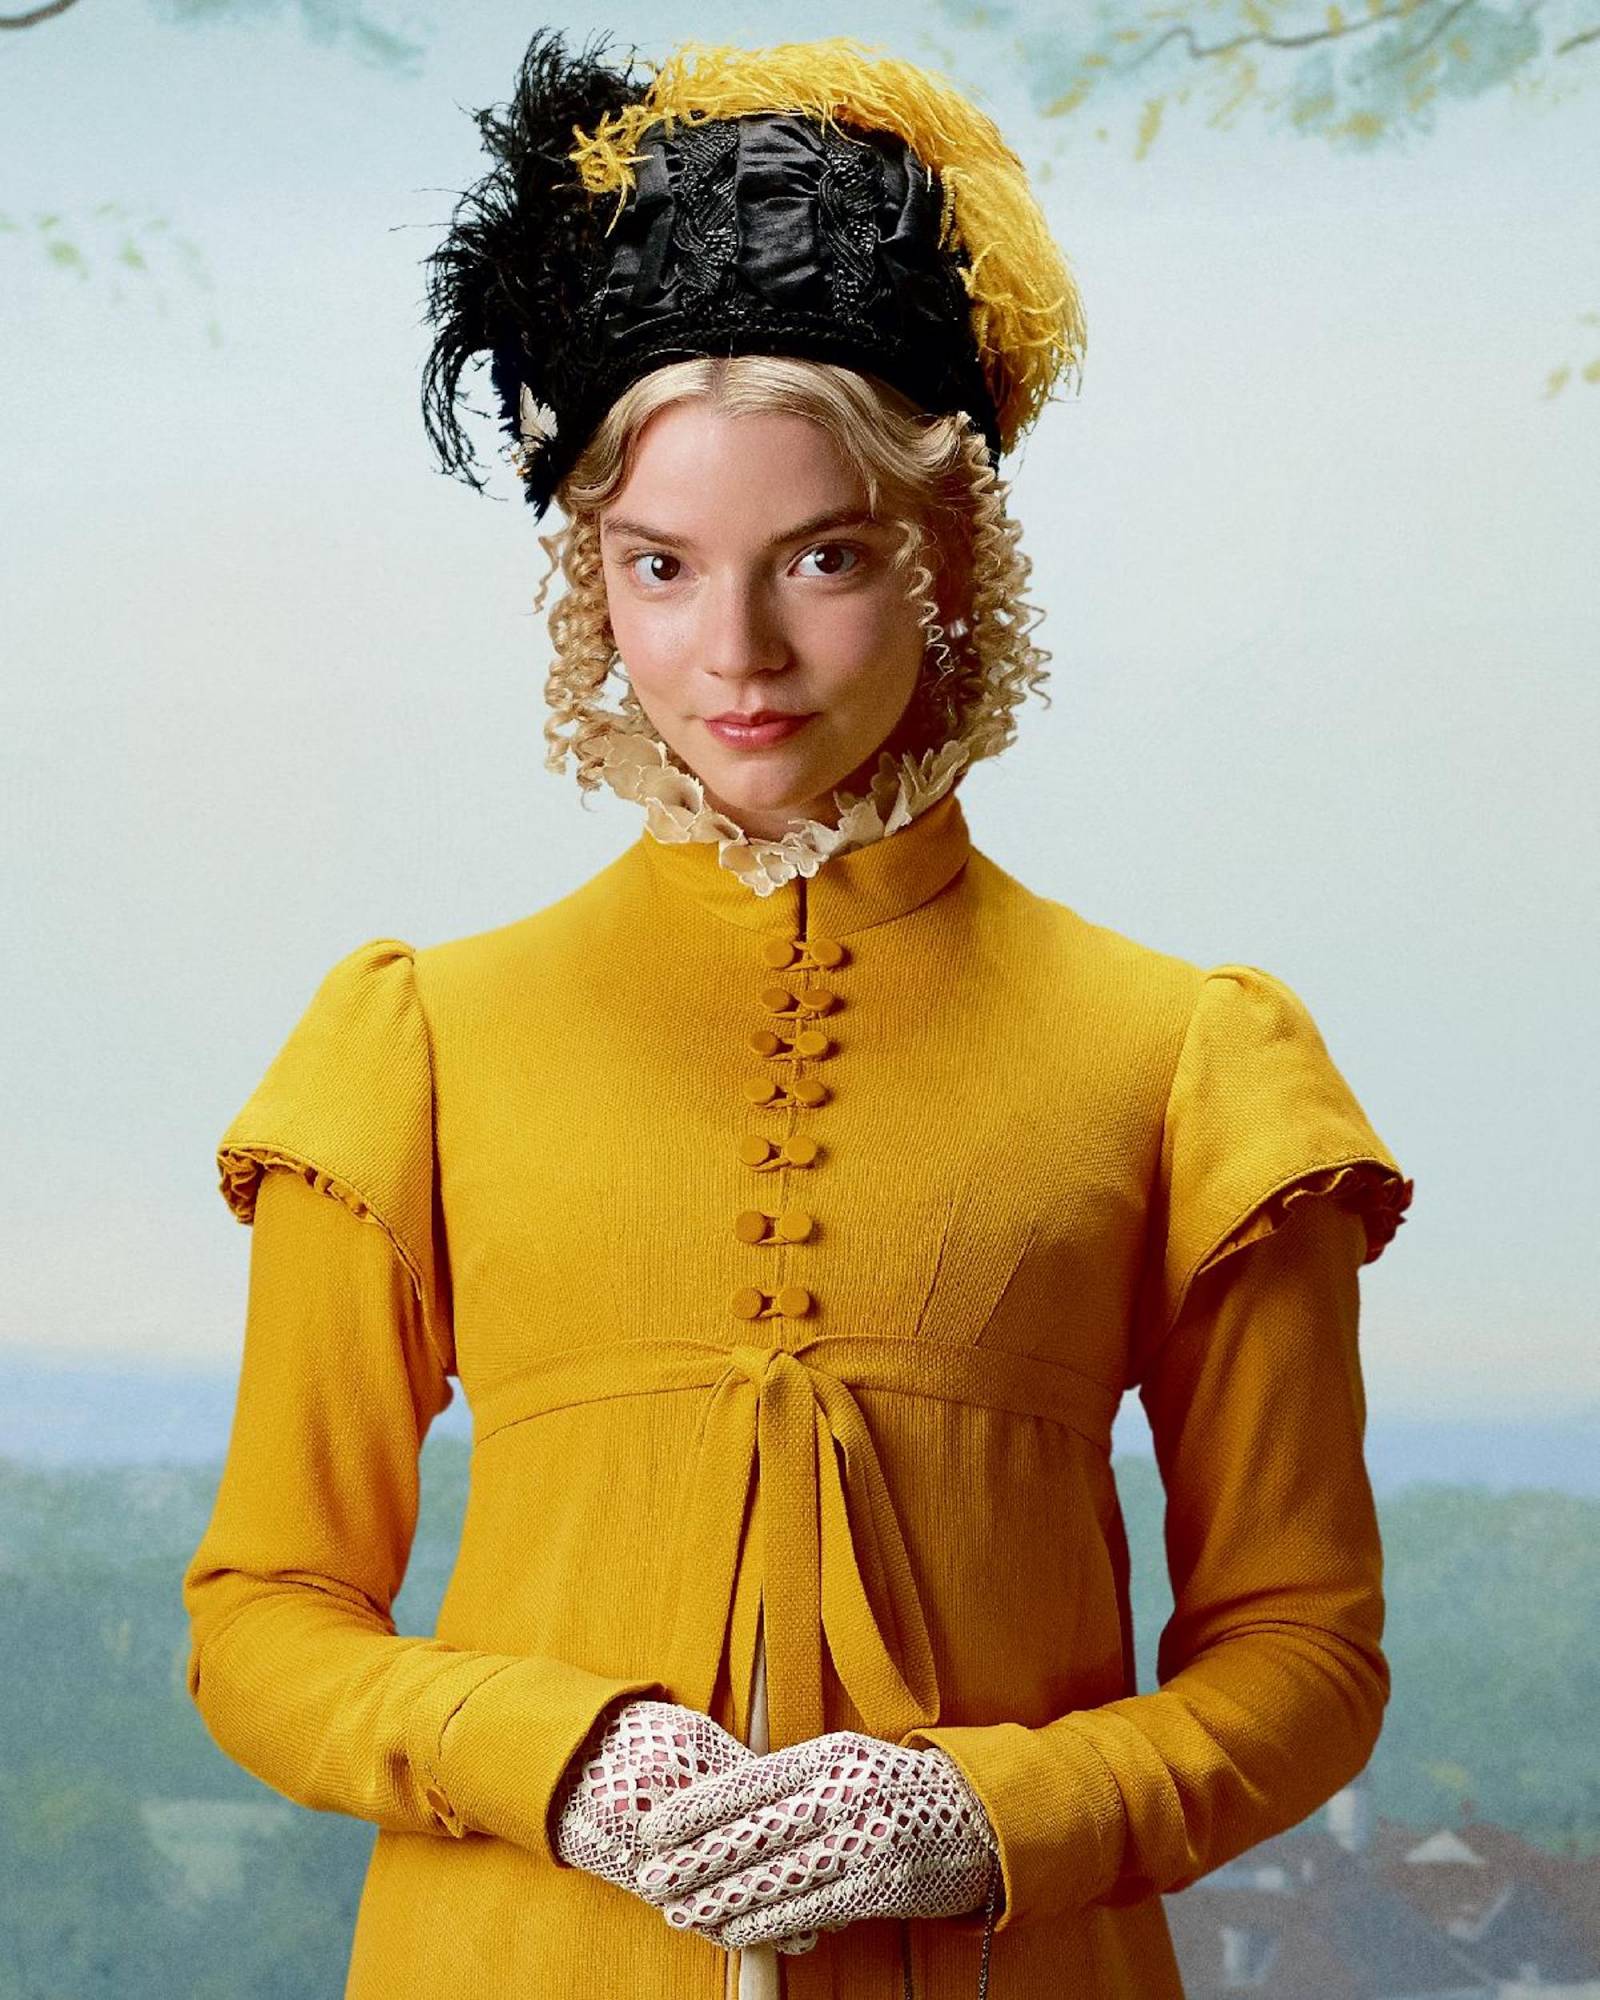 Kadr z filmu Emma (2020), remake adaptacji powieści Jane Austen z 1996 roku / Fot. materiały prasowe